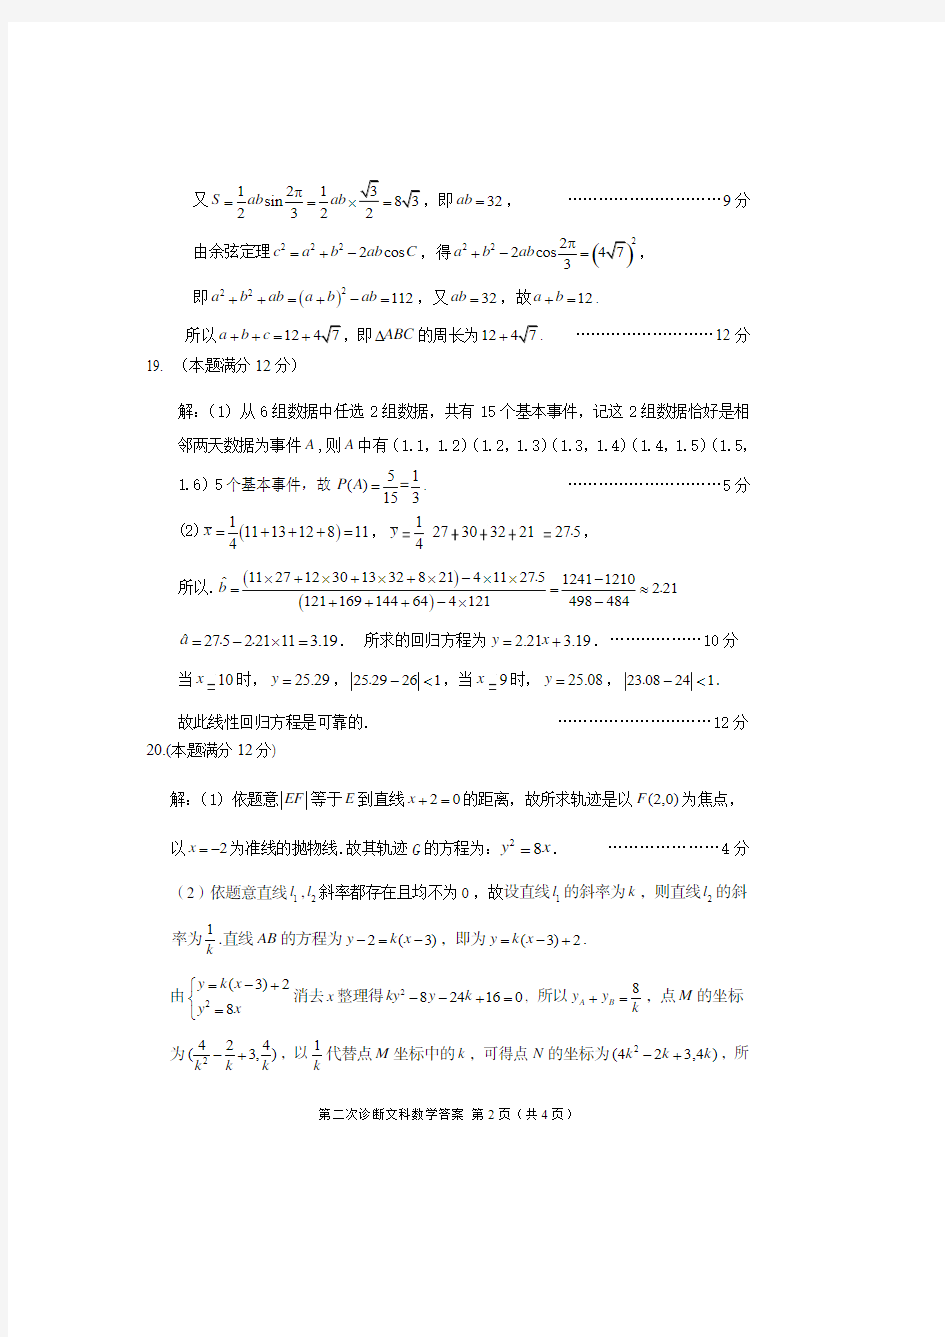 2020年甘肃省高考二诊文科数学答案